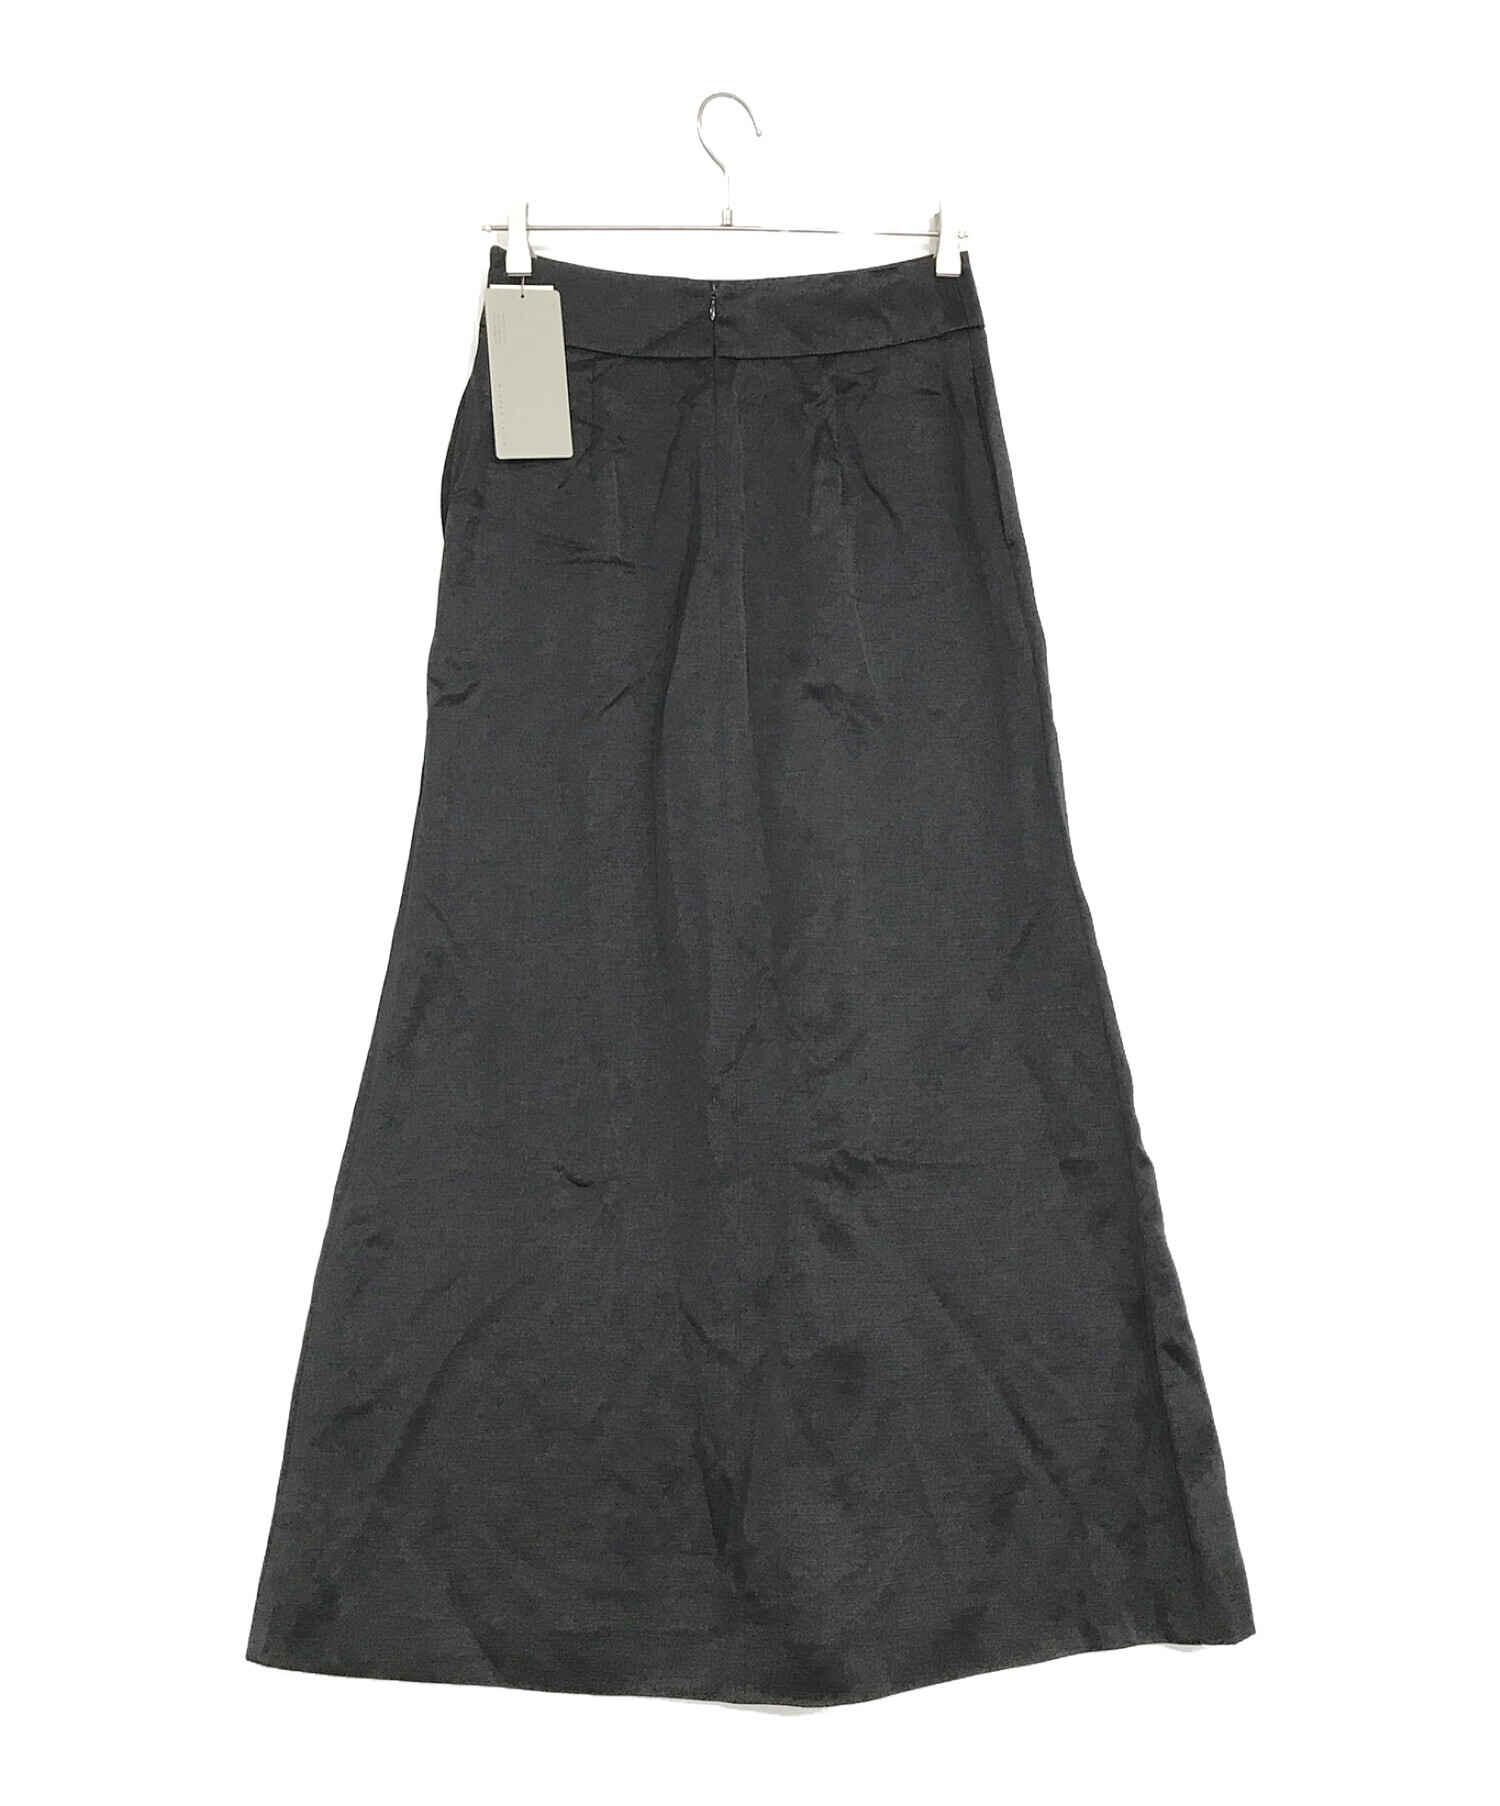 MIHOKO SAITO (ミホコ サイトウ) ロングスカート ブラック サイズ:SIZE 36